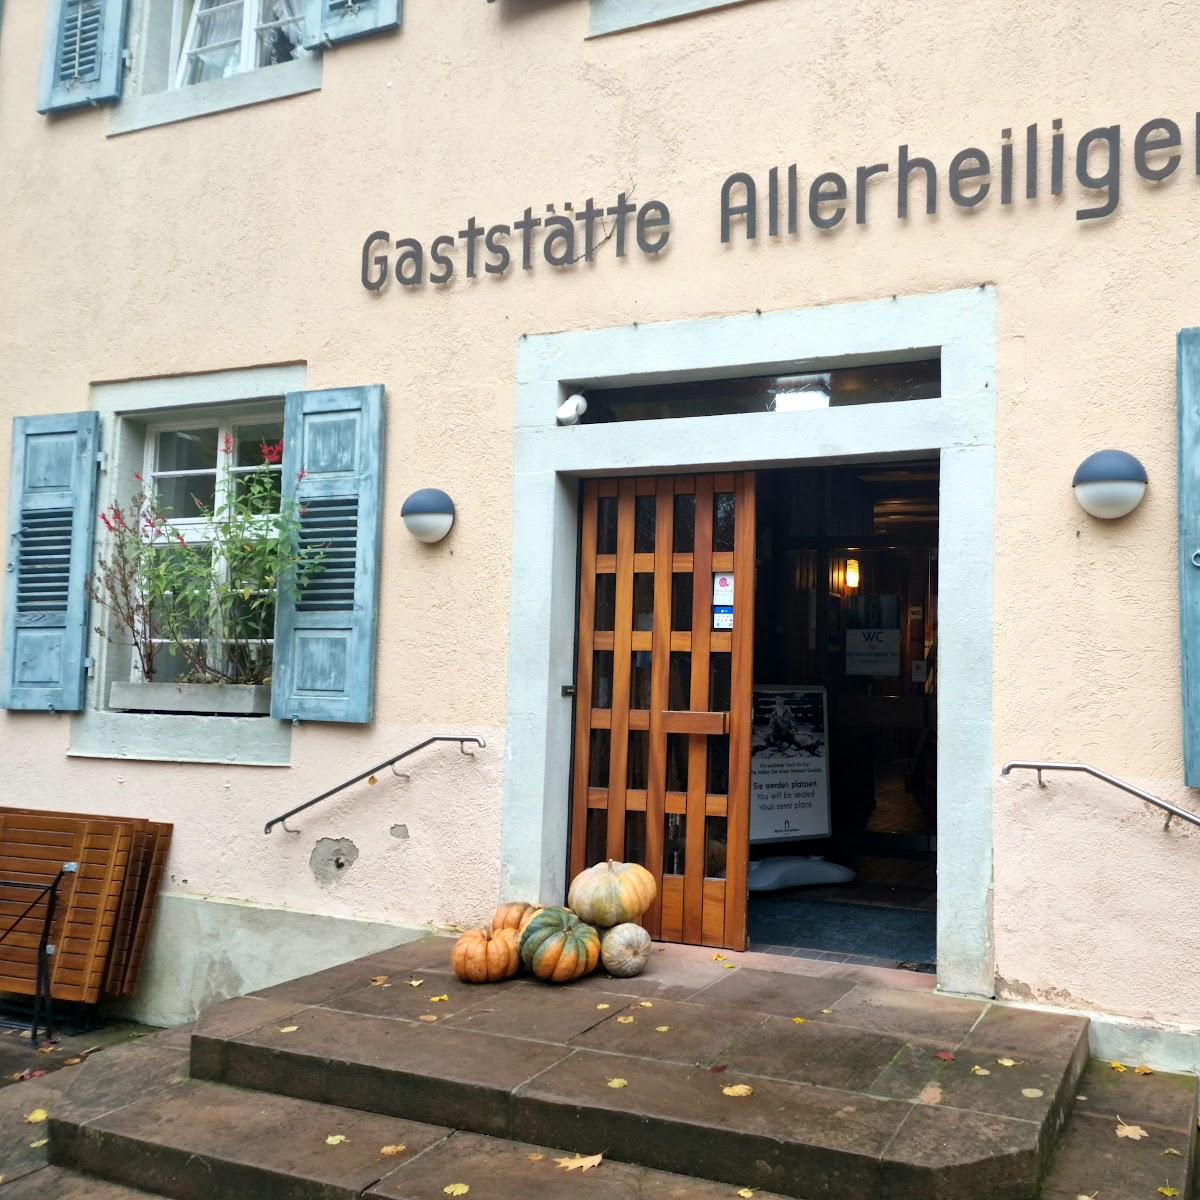 Restaurant "Gaststätte Allerheiligen" in Oppenau